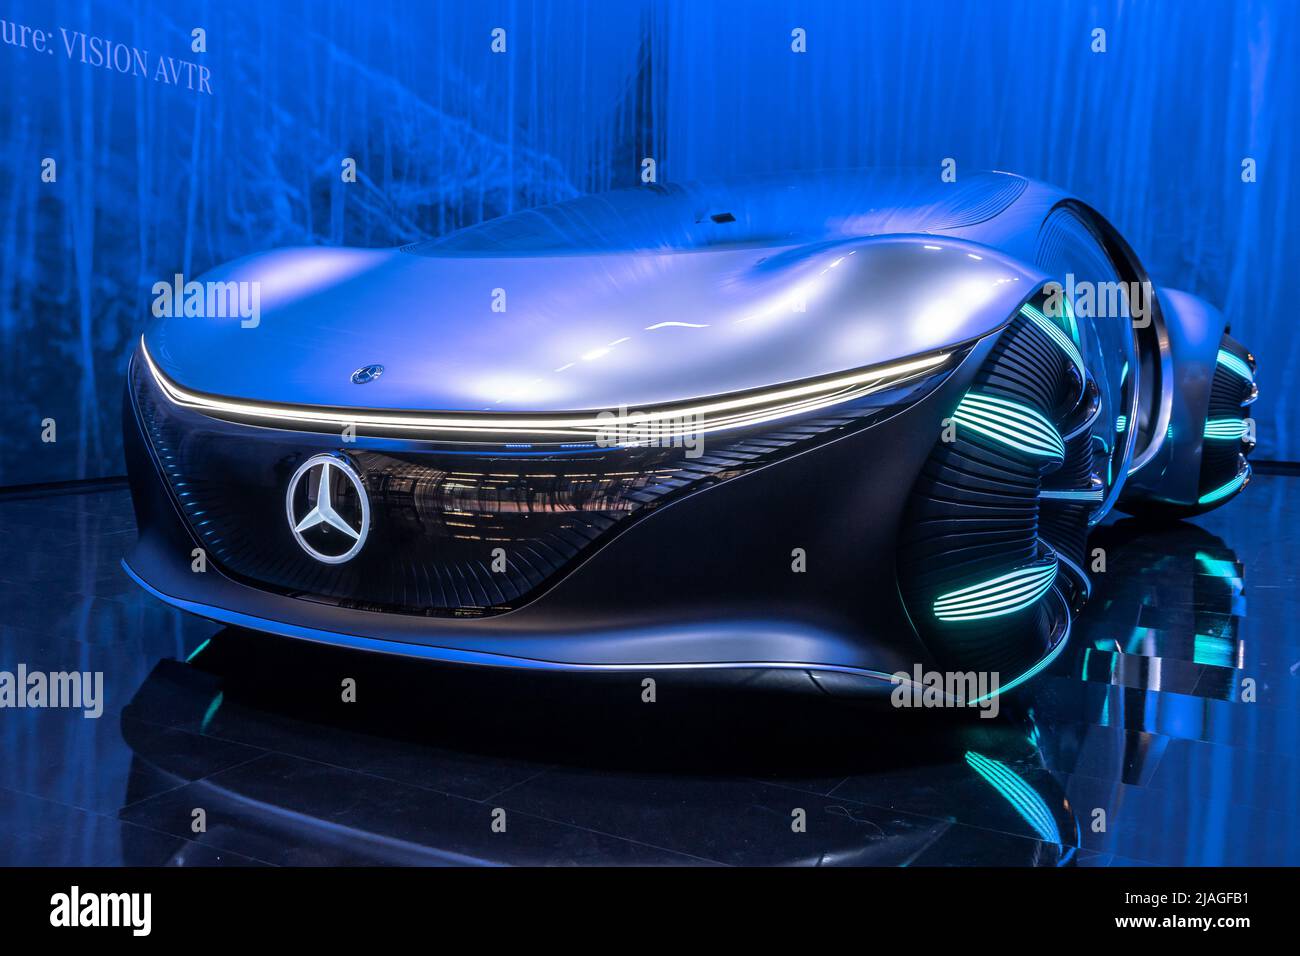 Mercedes-Benz Vision AVTR Concepto inteligente e intuitivo, leyendo su mente mientras conduce, presentado en la feria IAA Mobility 2021 en Munich, Germa Foto de stock